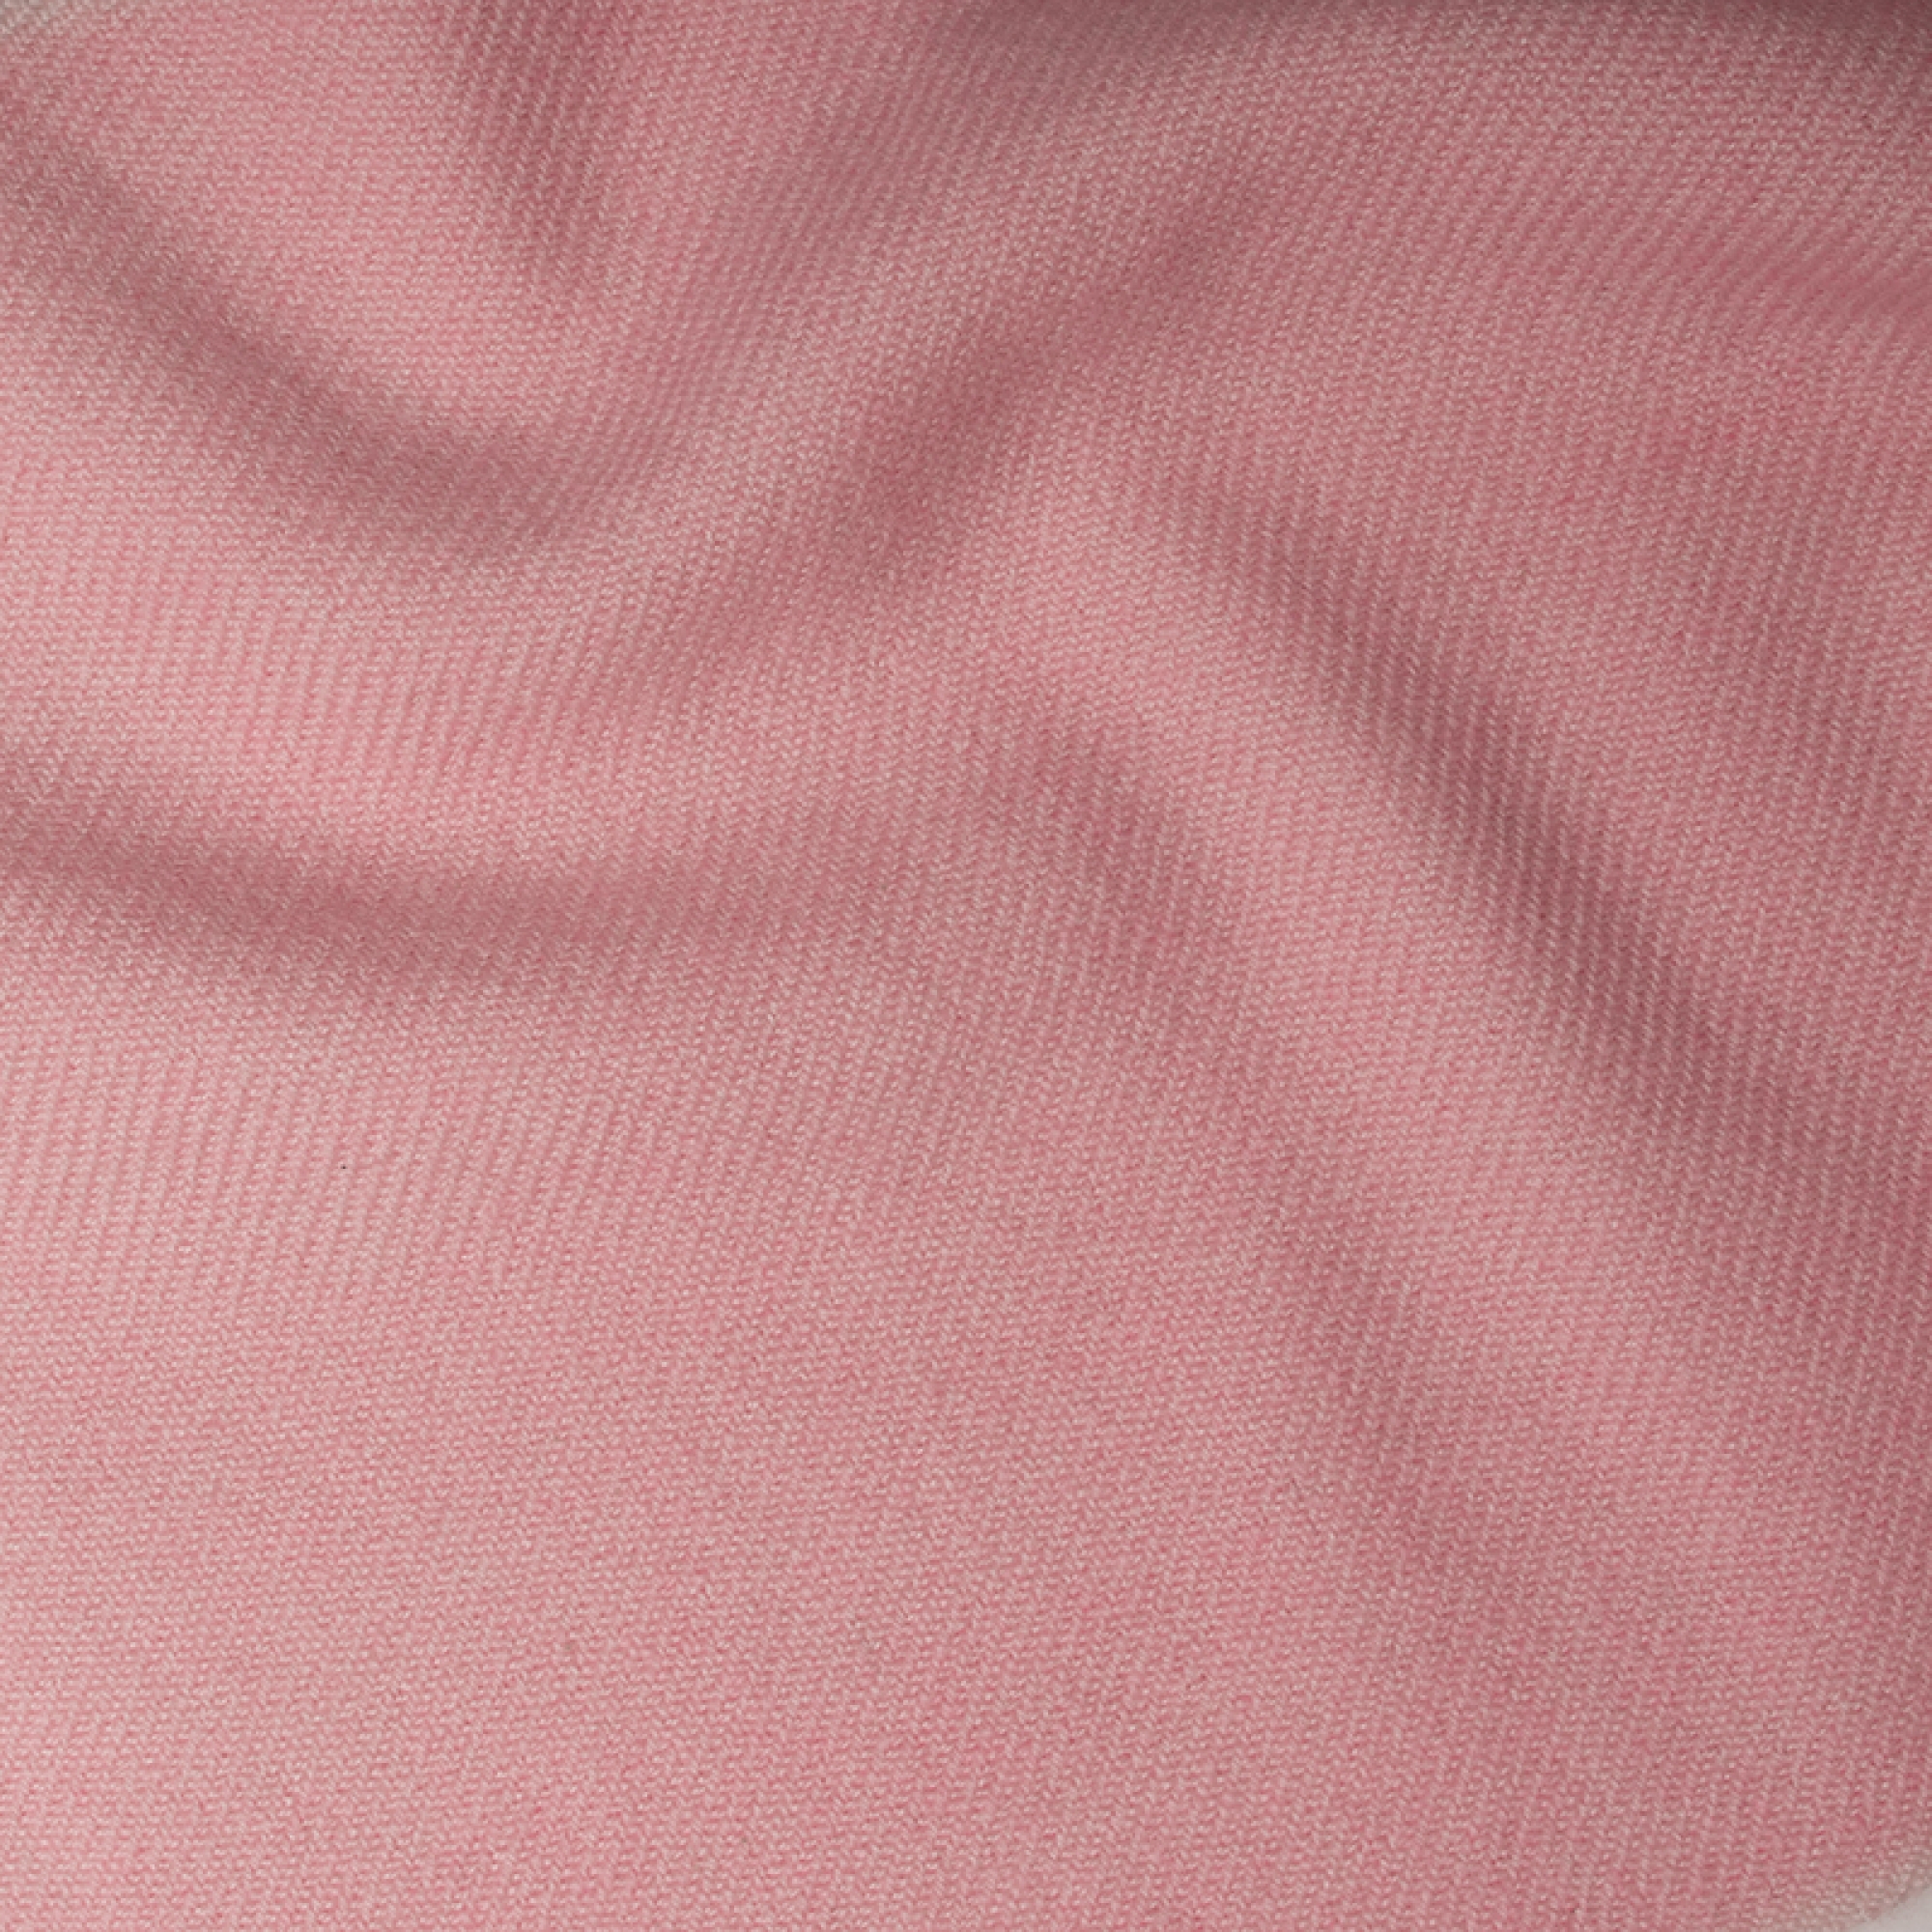 Cashmere accessori plaid toodoo plain s 140 x 200 rosa confetto 140 x 200 cm